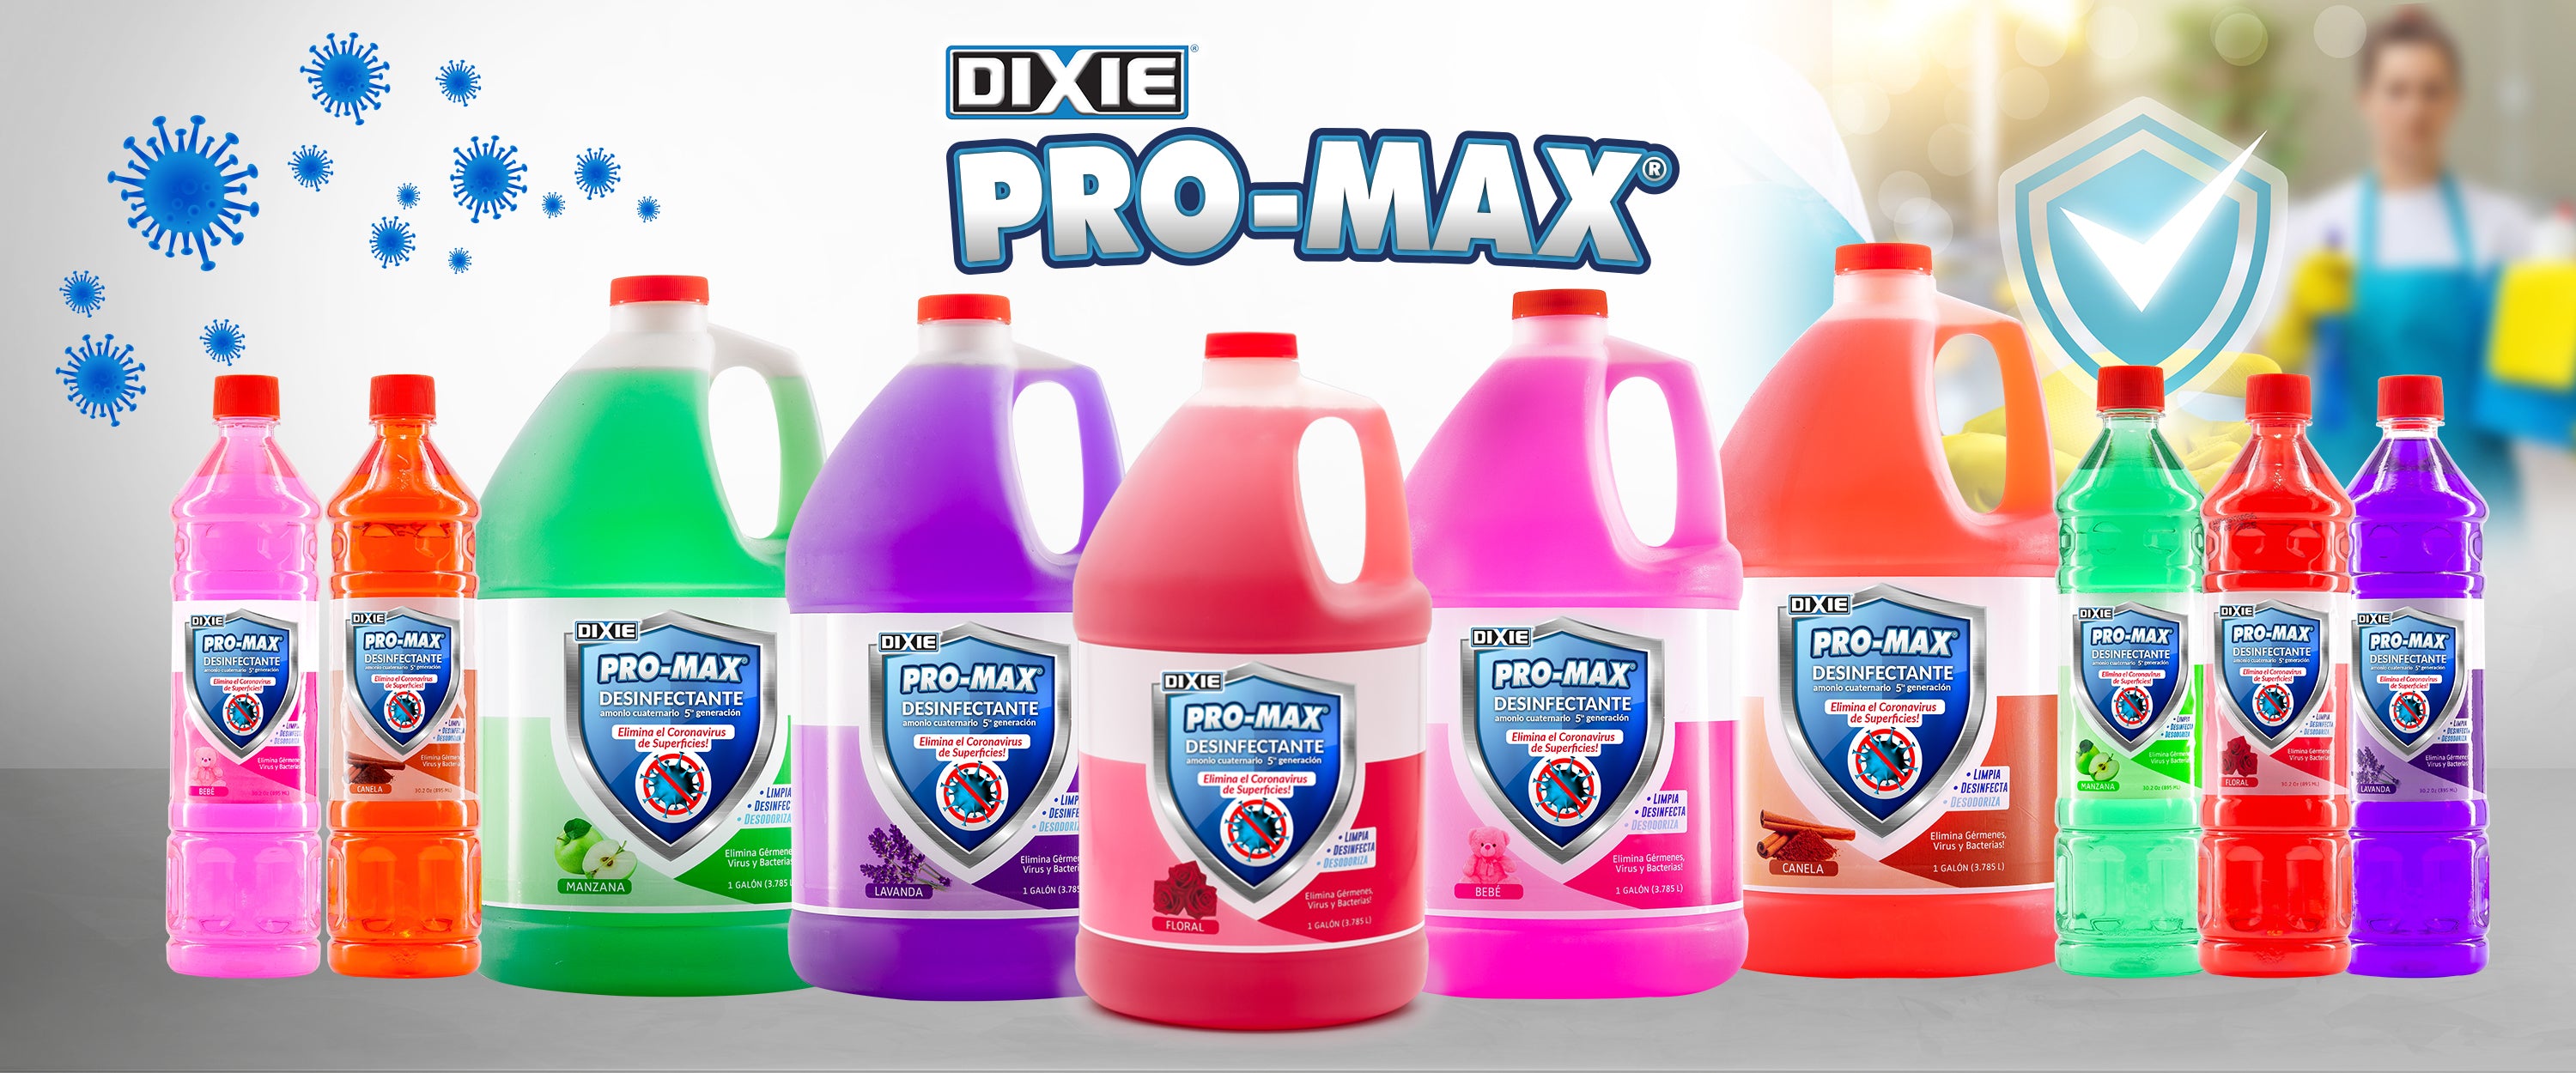 Pro-Max Desinfectante